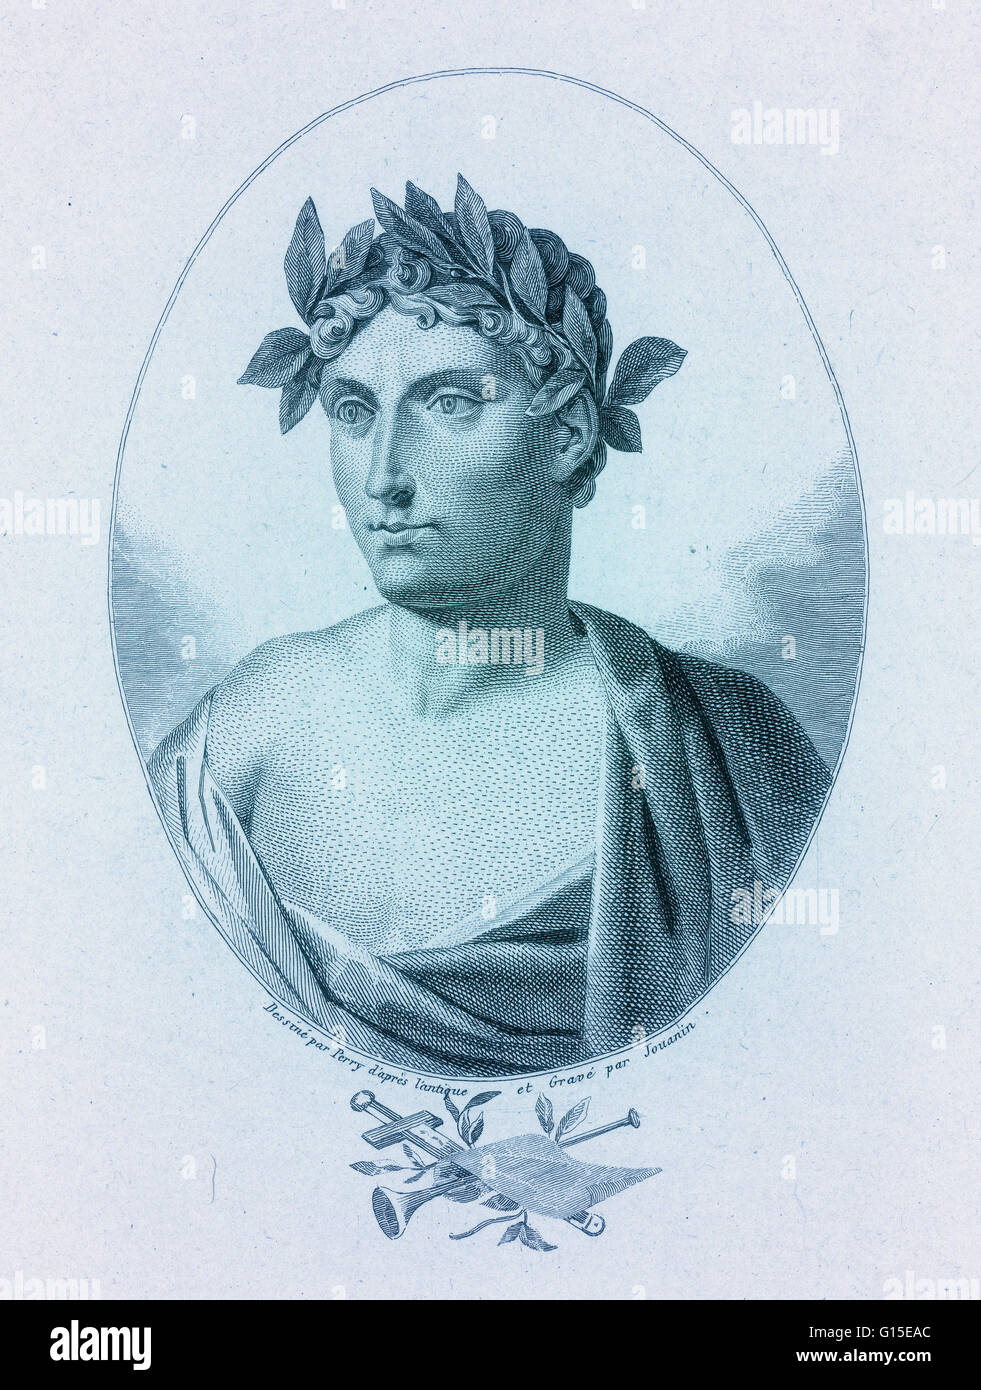 Quintus Cocles Flaccus, andernfalls bekannt als Horace, war die führende römische Lyriker während der Zeit des Augustus. Stockfoto